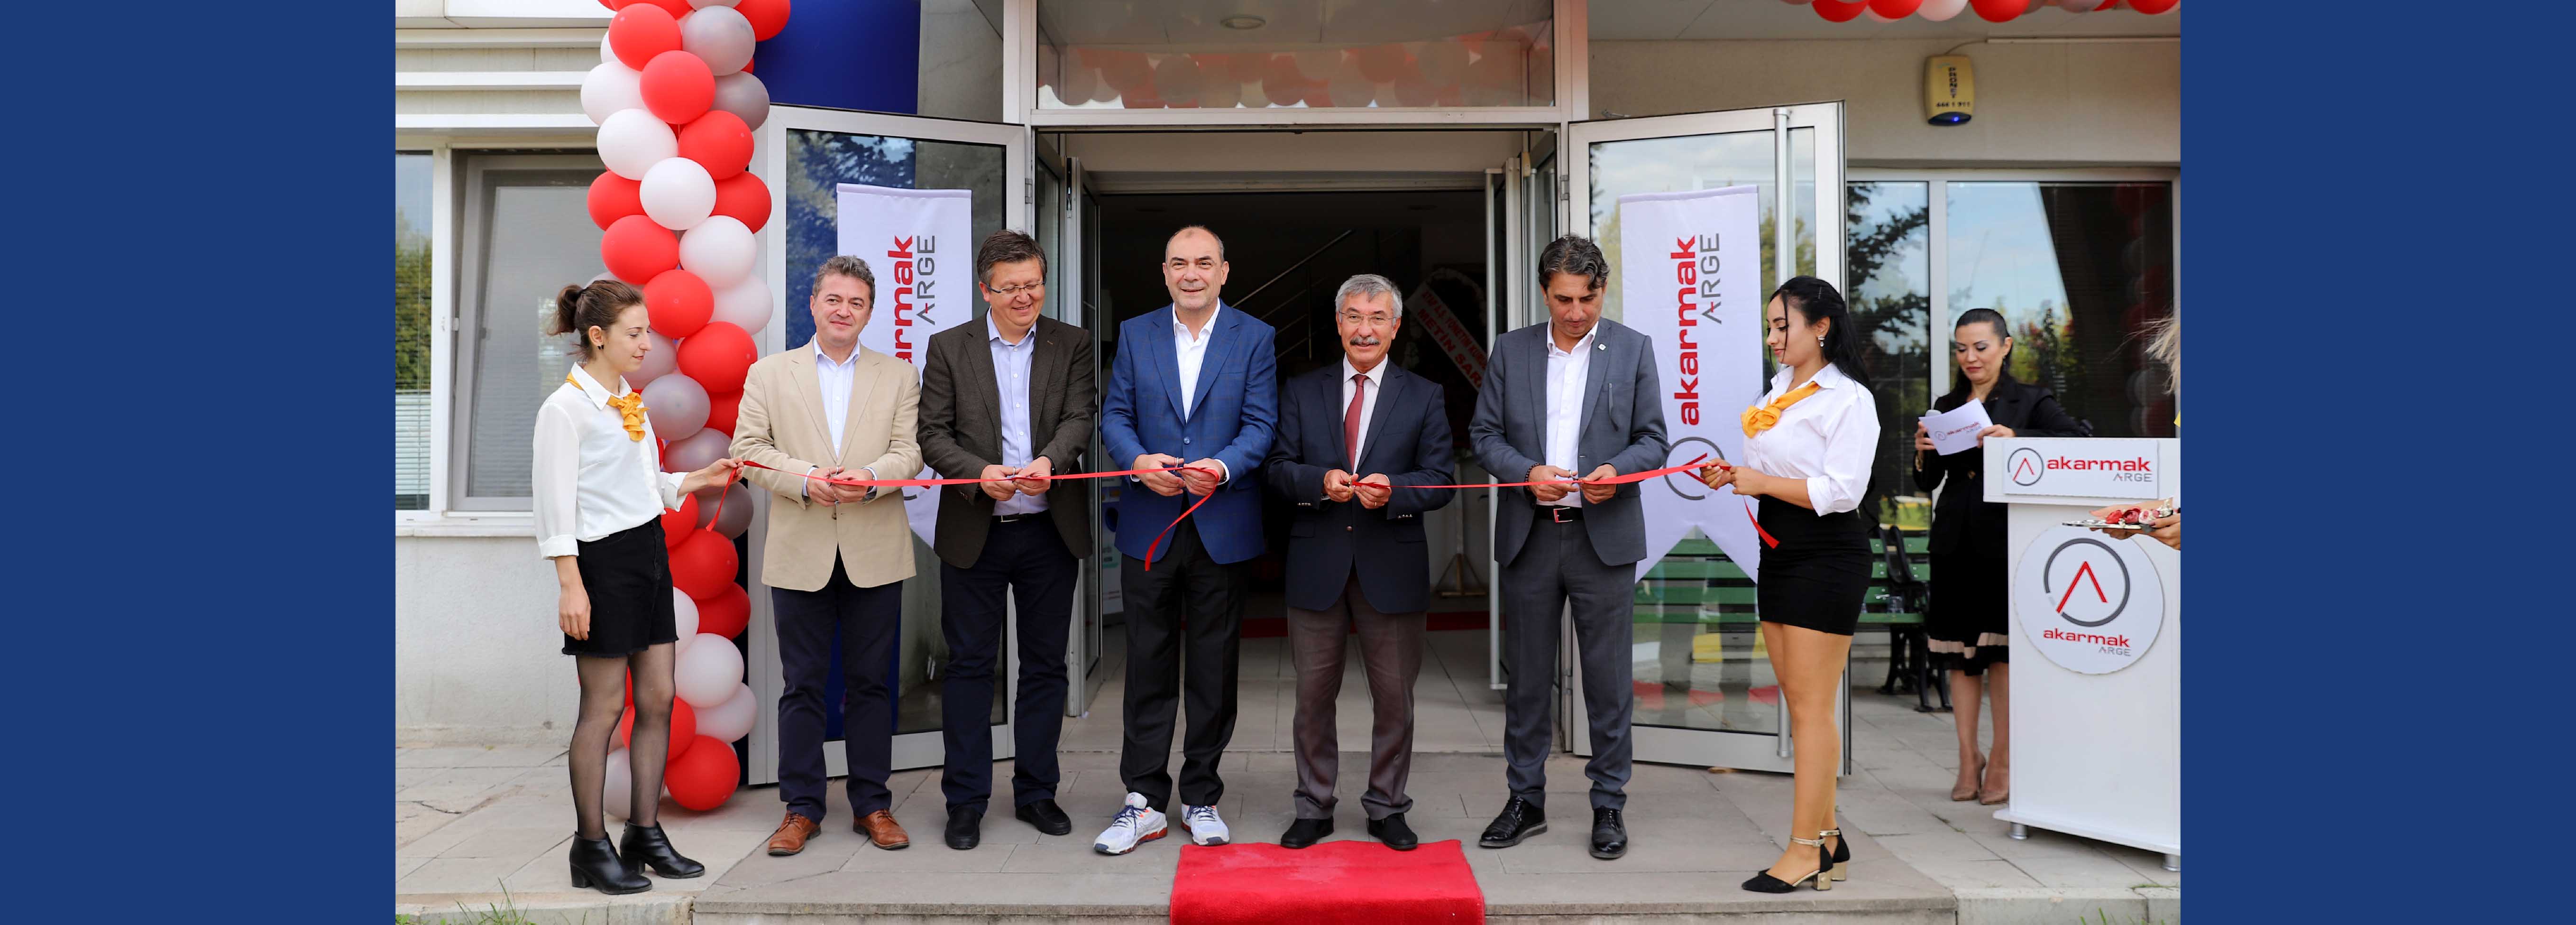 65’den fazla ülkeye ihraç gerçekleştiren Akar Makina yeni Ar-GE Merkezi açtı  